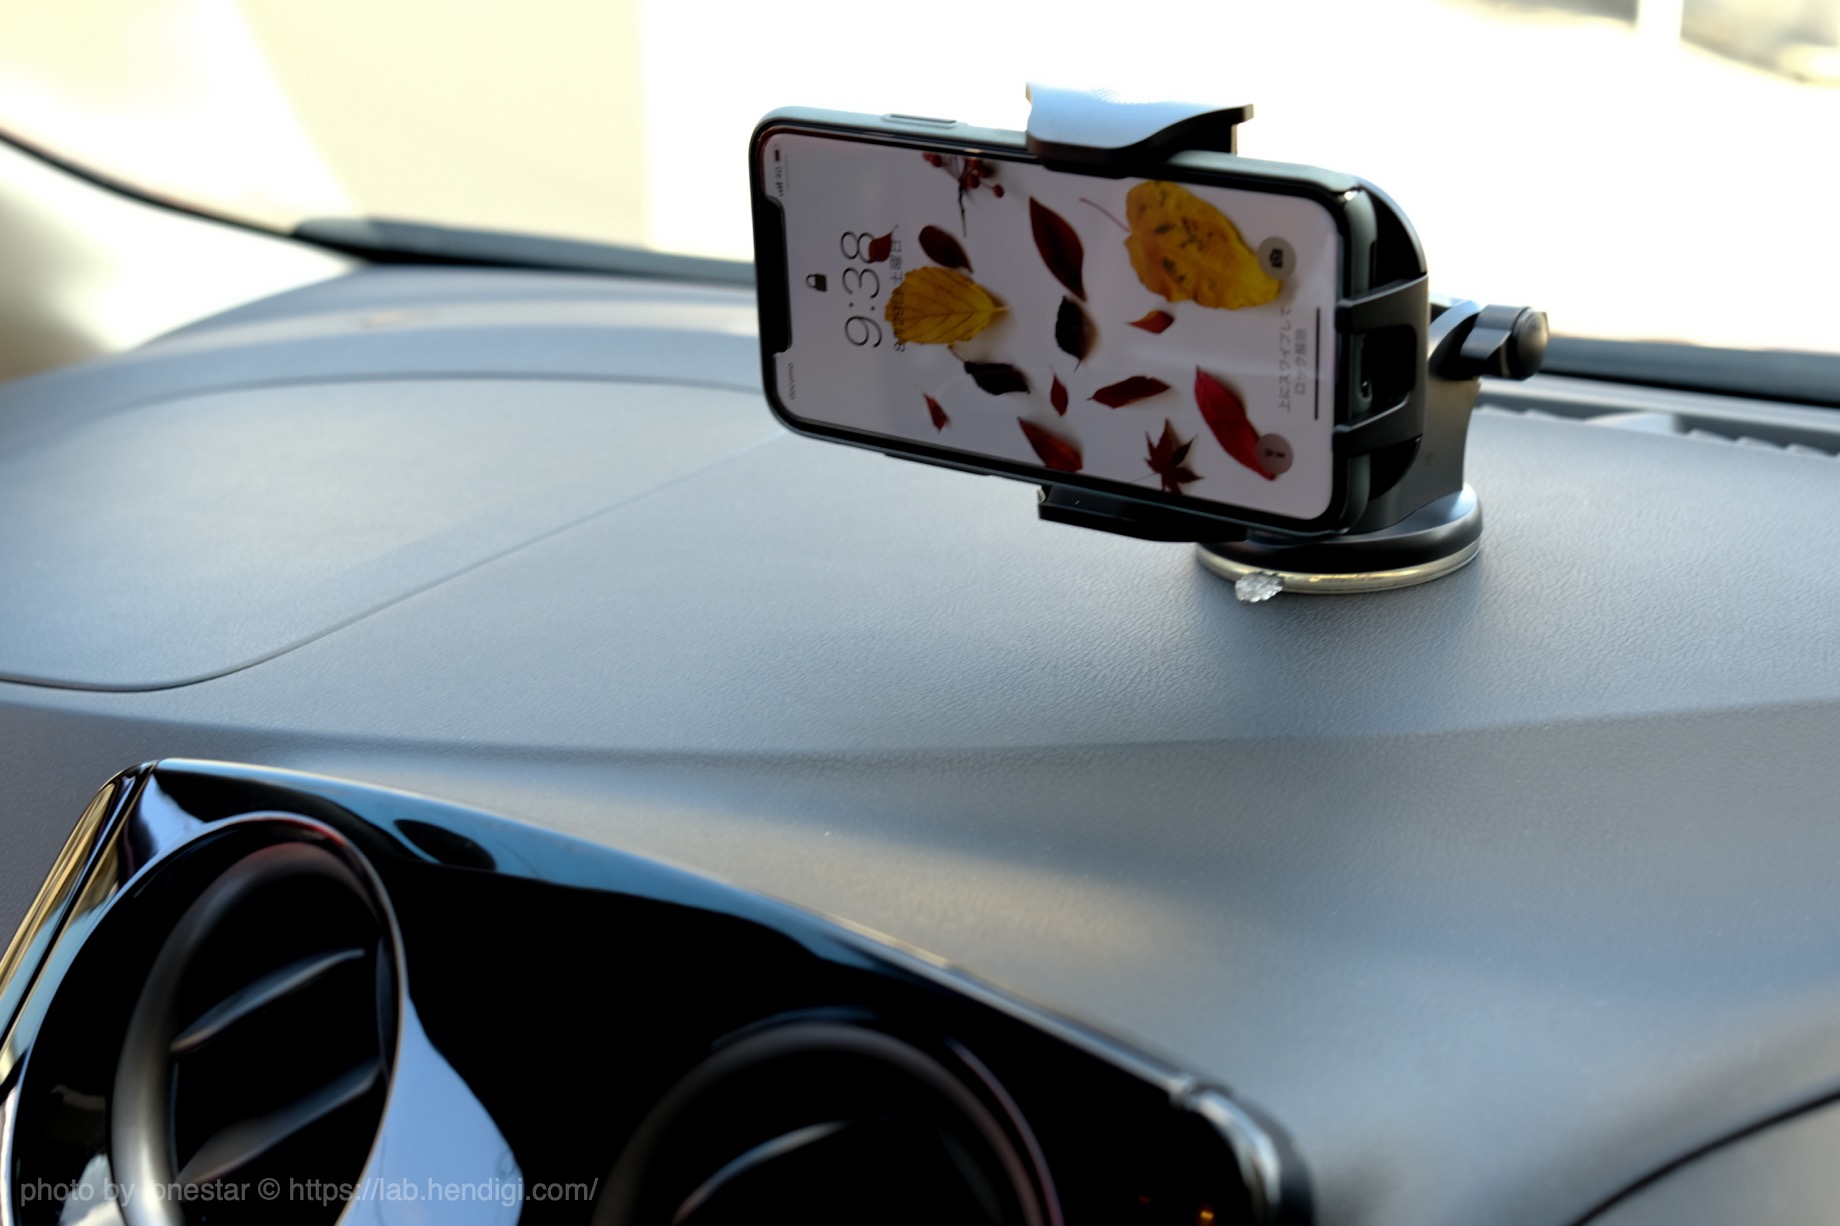 Desertwest 車載ホルダー Iphoneを使った車載タイムラプス撮影を試してみた やっぱりスマホホルダーがあると安定して便利